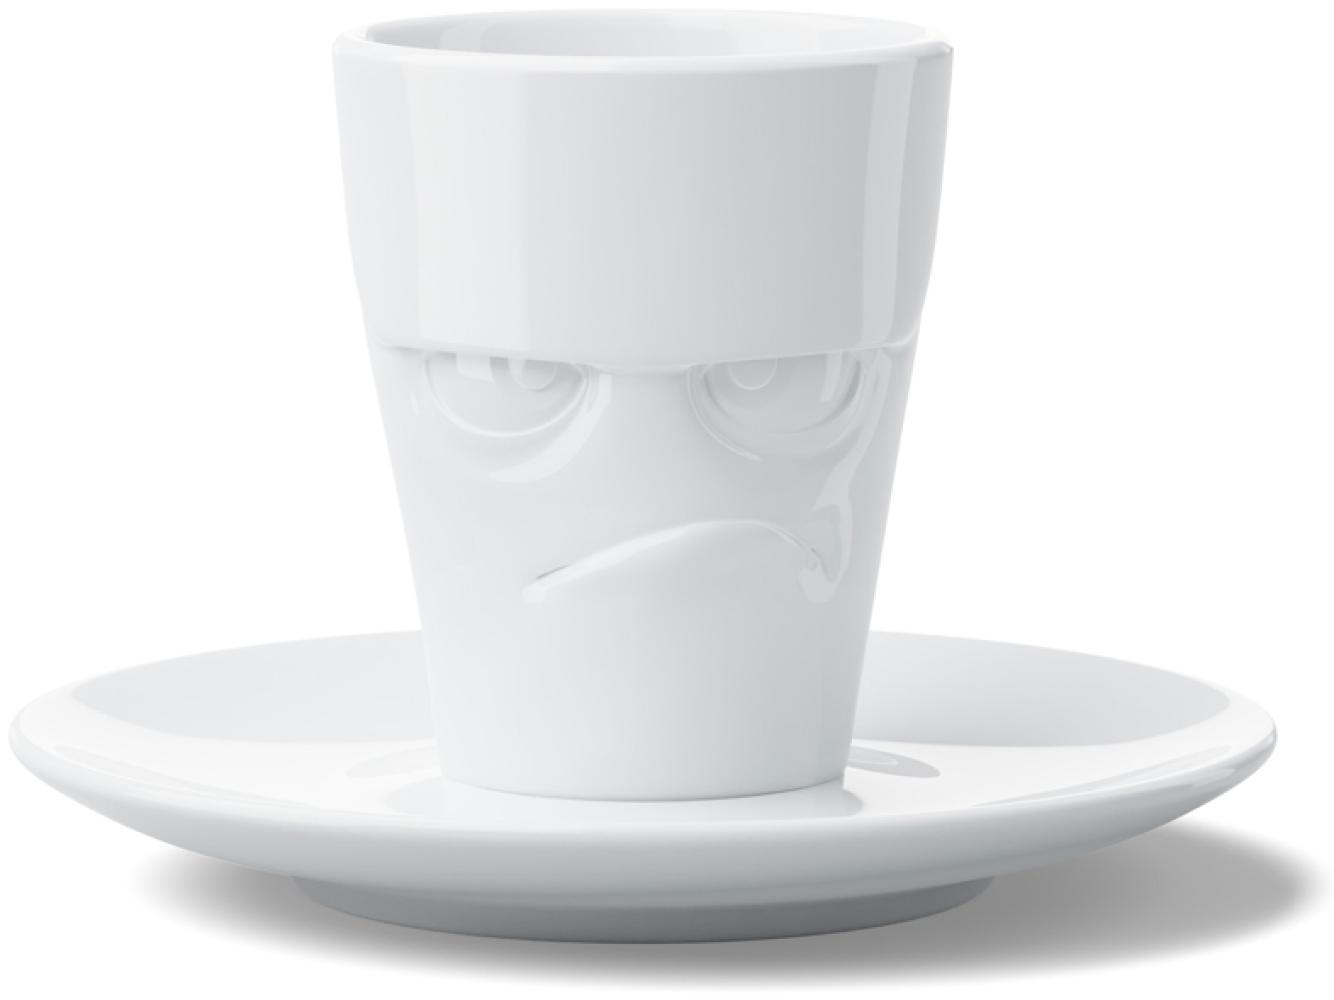 Fiftyeight Products Espresso Mug mit Henkel grummelig Bild 1